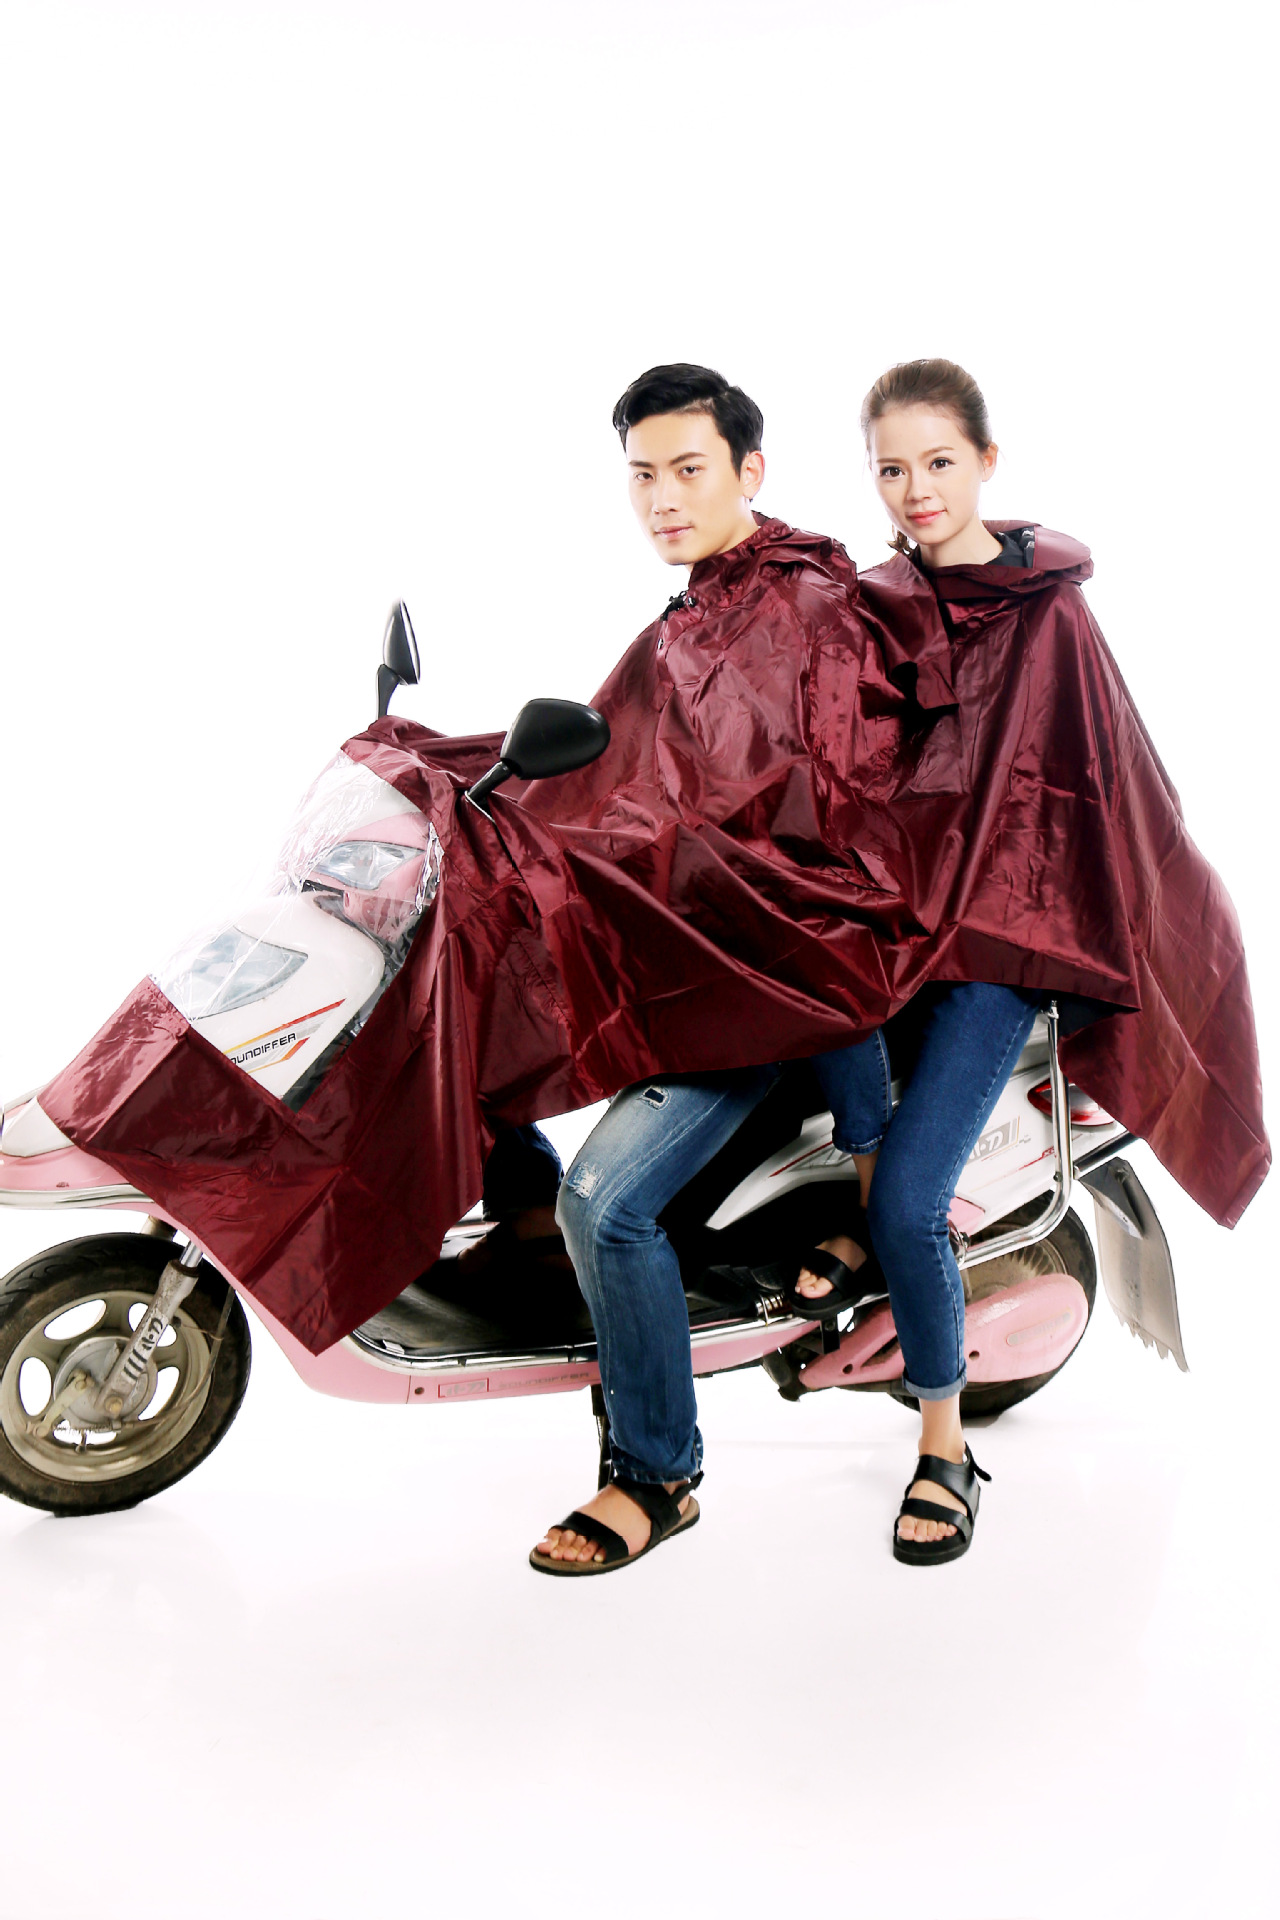 连体雨衣、雨披 专业供应特大尼龙优质胶布雨披 金华地区厂家(图)1